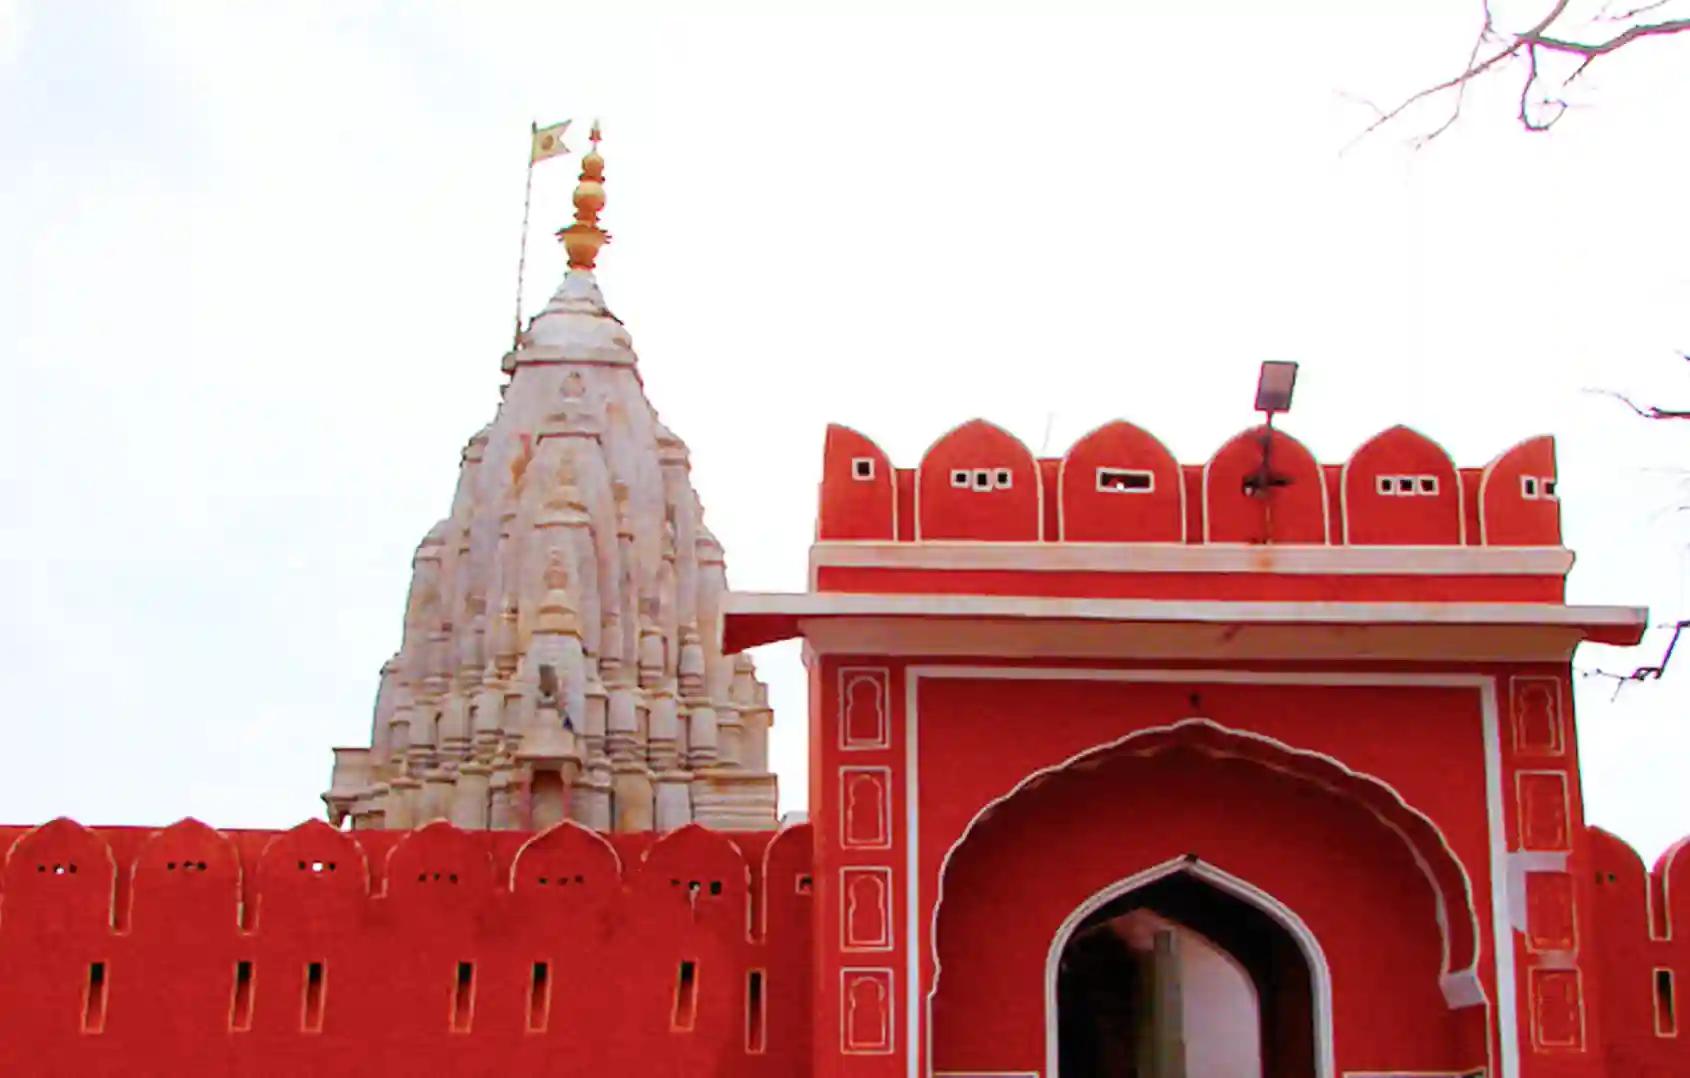 श्री गलताजी सूर्य मंदिर,जयपुर, राजस्थान 